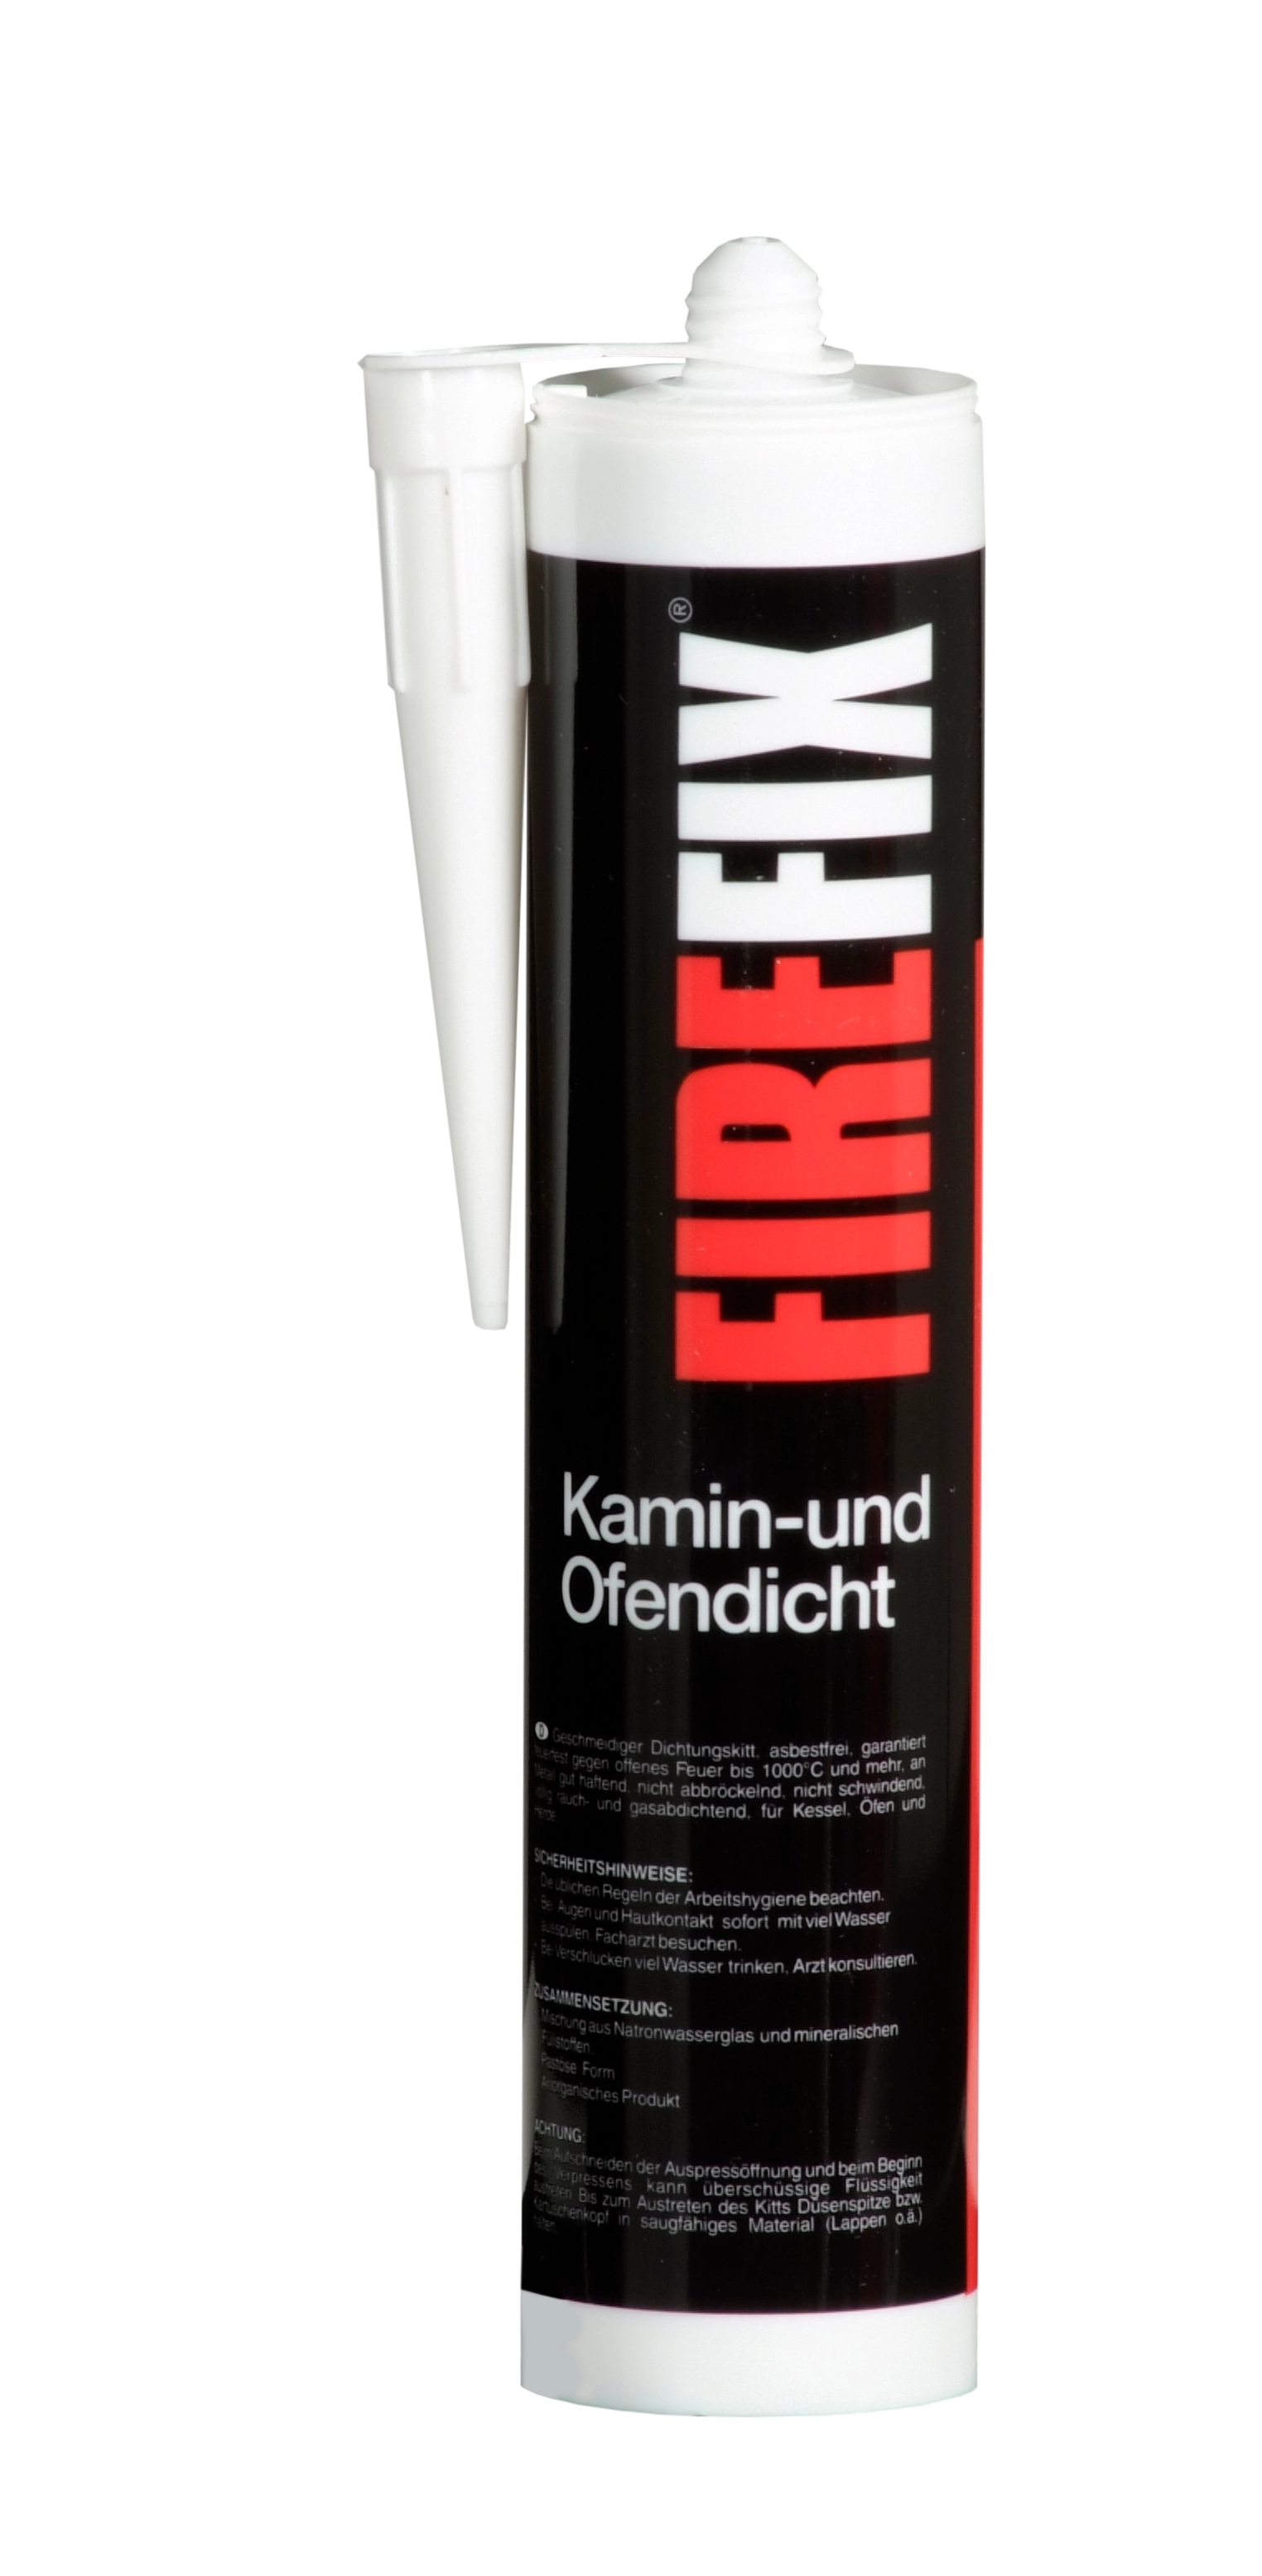 Firefix Kamin- und Ofendicht kaufen bei OBI